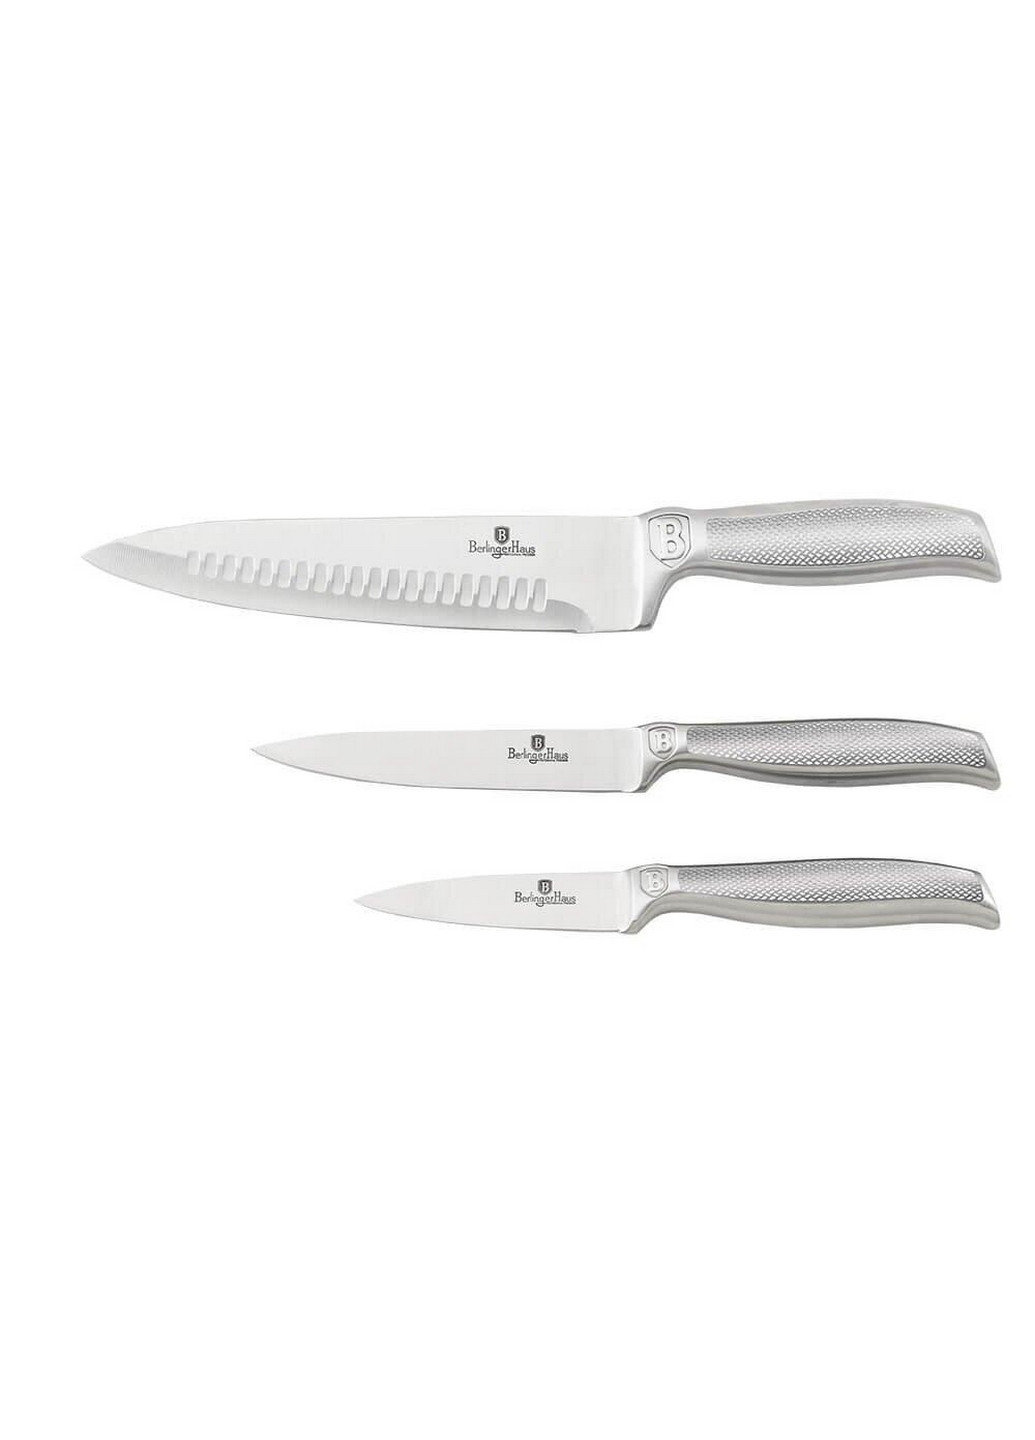 Набор ножей 3 предмета Kikoza Collection Berlinger Haus нержавеющая сталь,